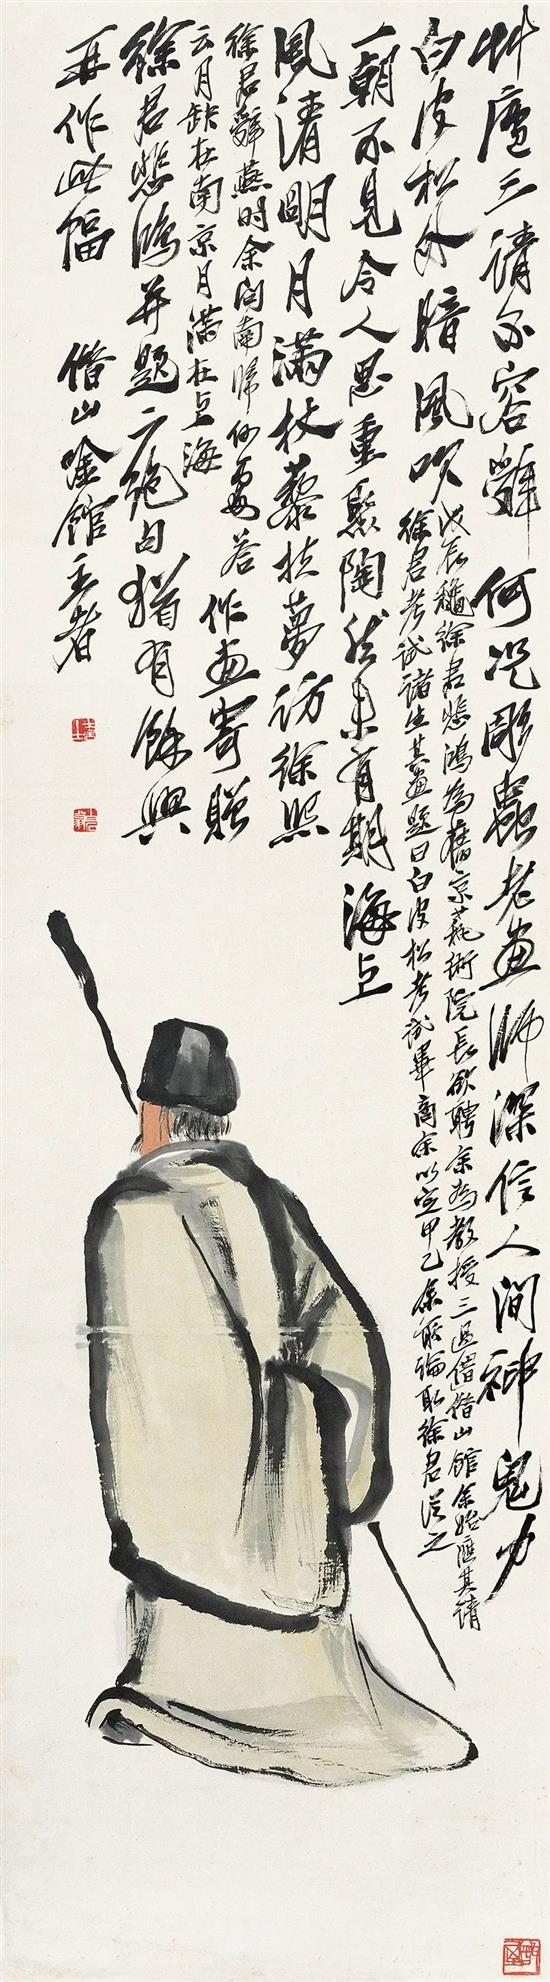 寻旧图 齐白石 无年款151.5cm×42cm 纸本设色 北京画院藏